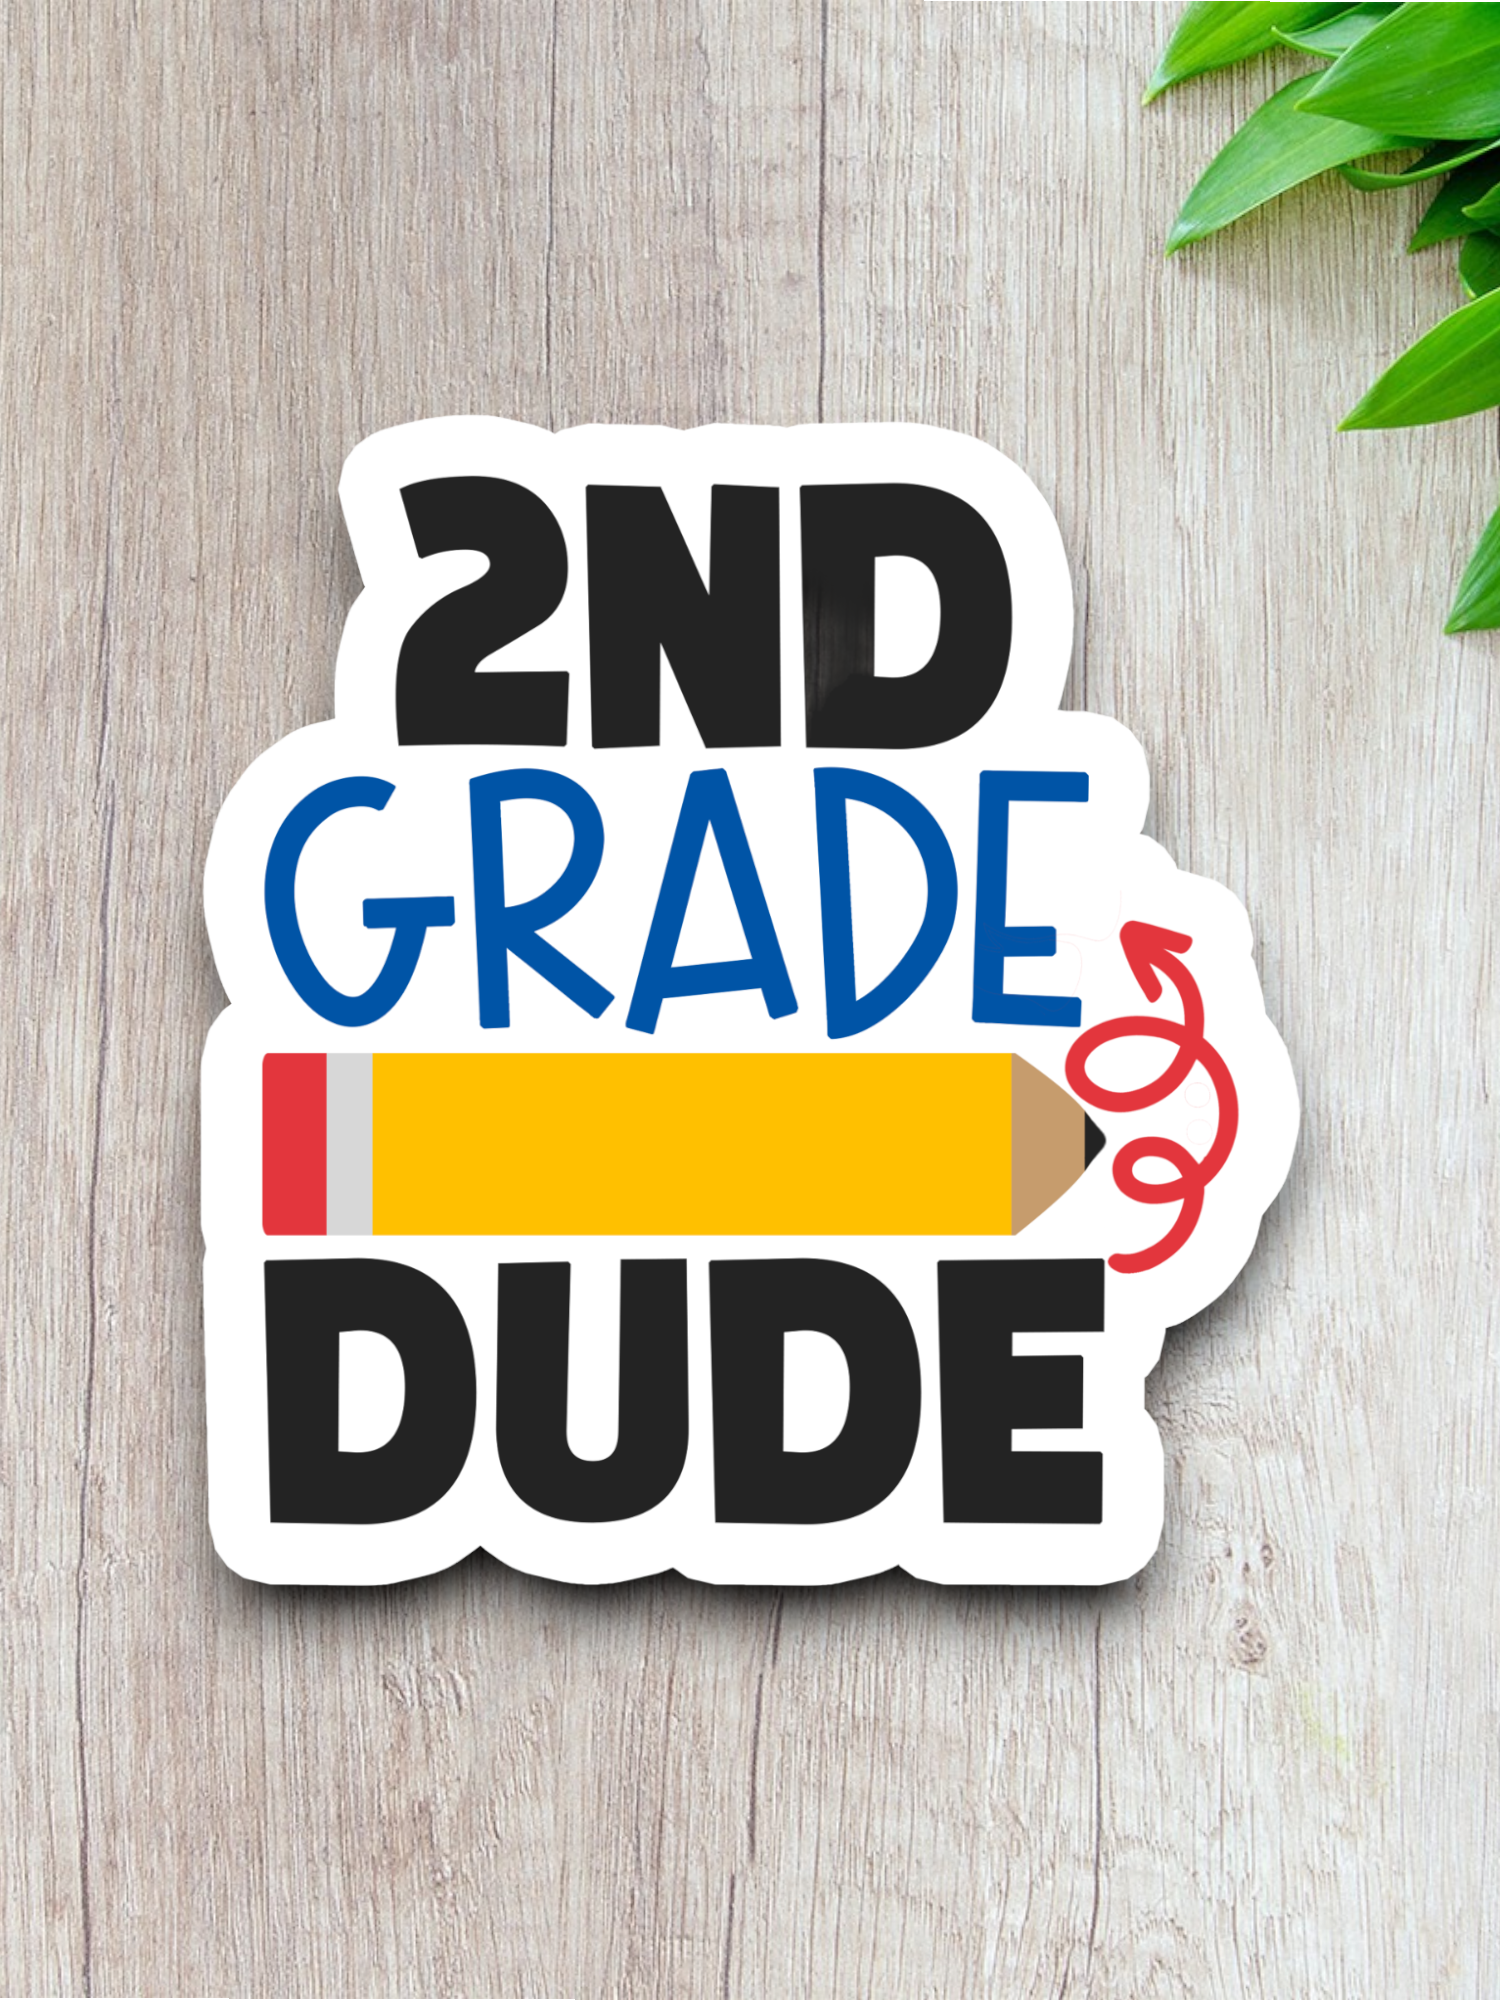 2nd Grade Dude Version 1 - School Sticker